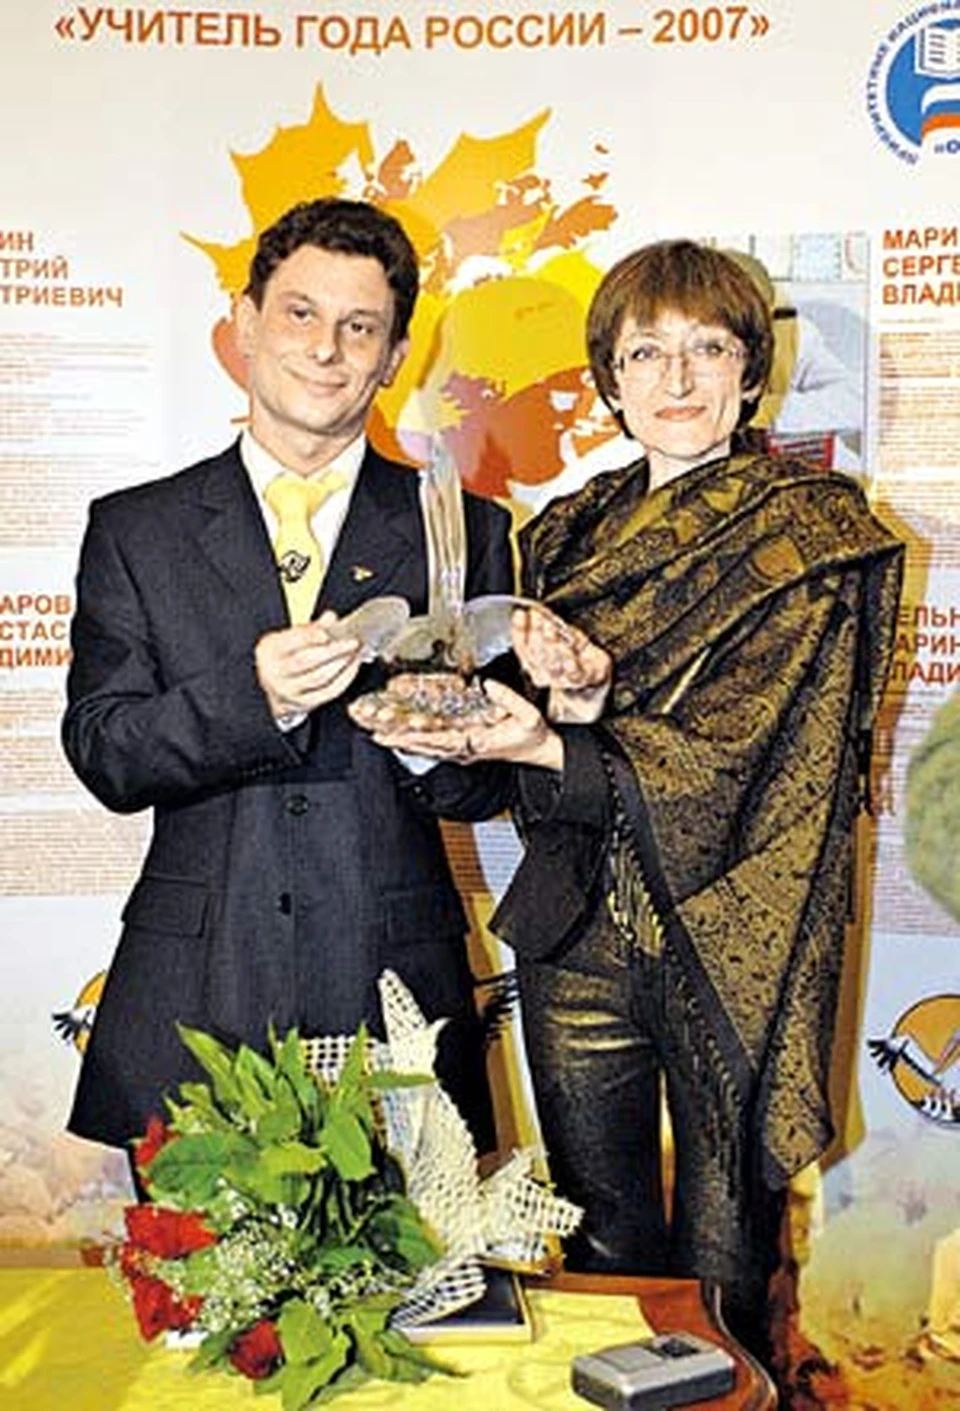 Оба победителя - Анна Мехед и Дмитрий Гущин (он из Питера) - учителя математики.